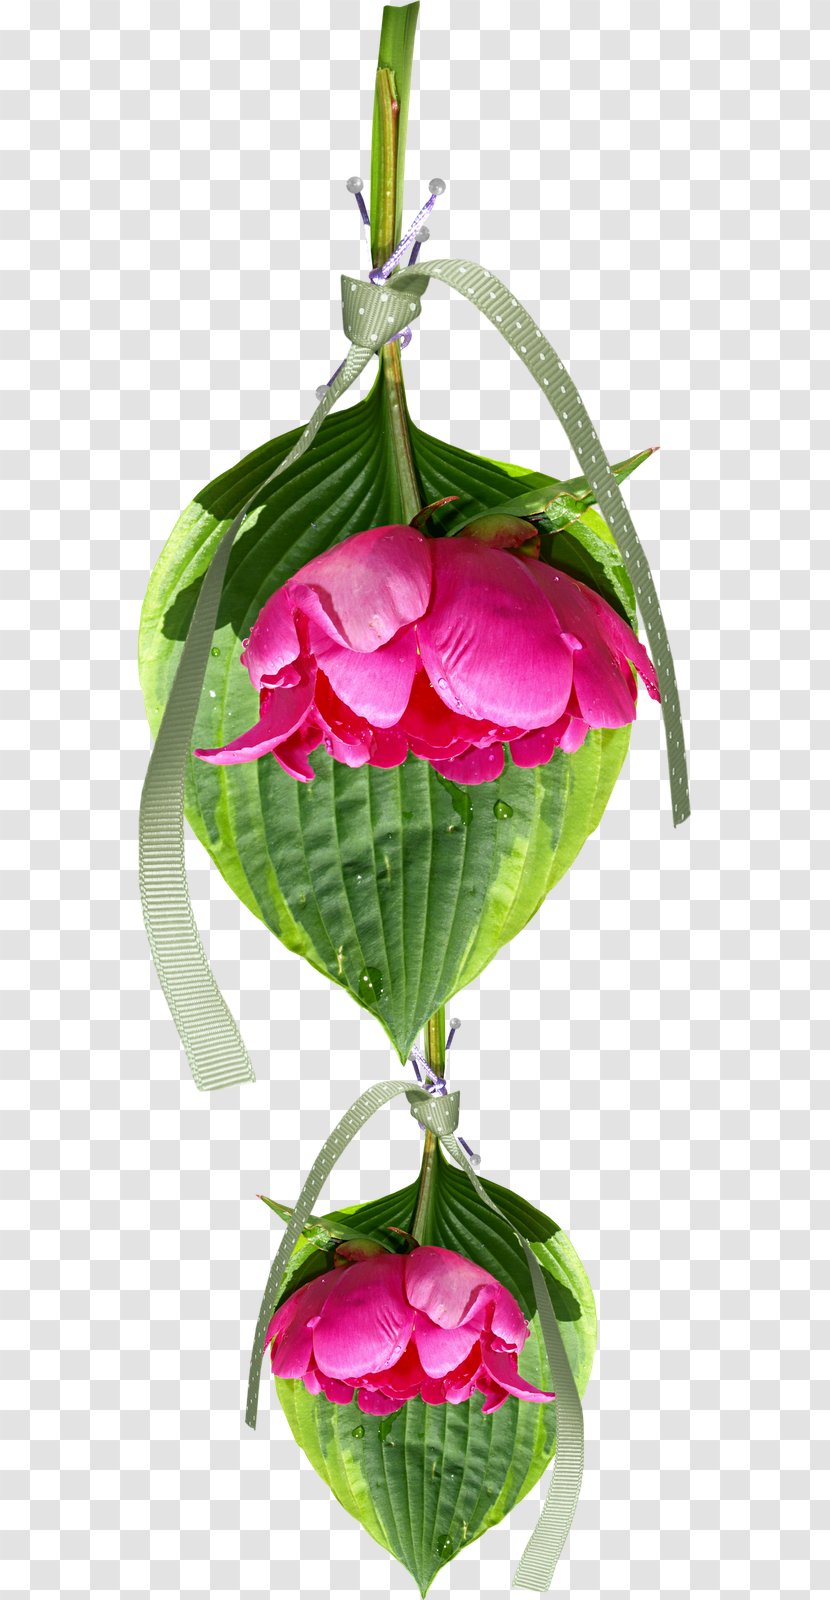 Floral Design Flower Clip Art - Leaf Transparent PNG